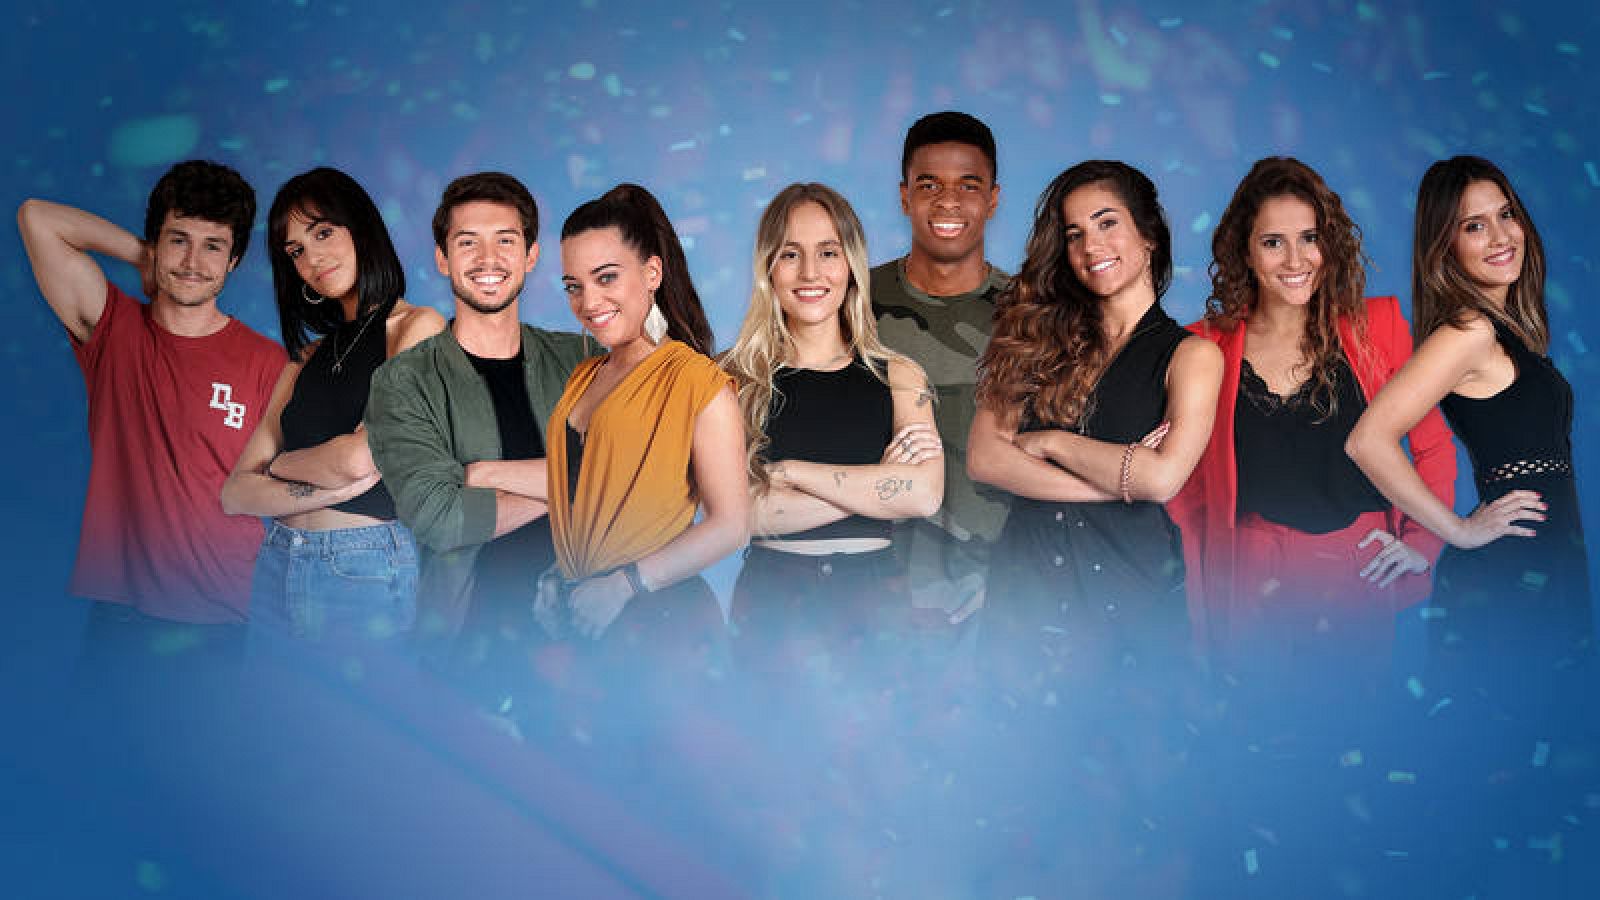 RÃÂ©sultat de recherche d'images pour "eurovision 2019 espana"